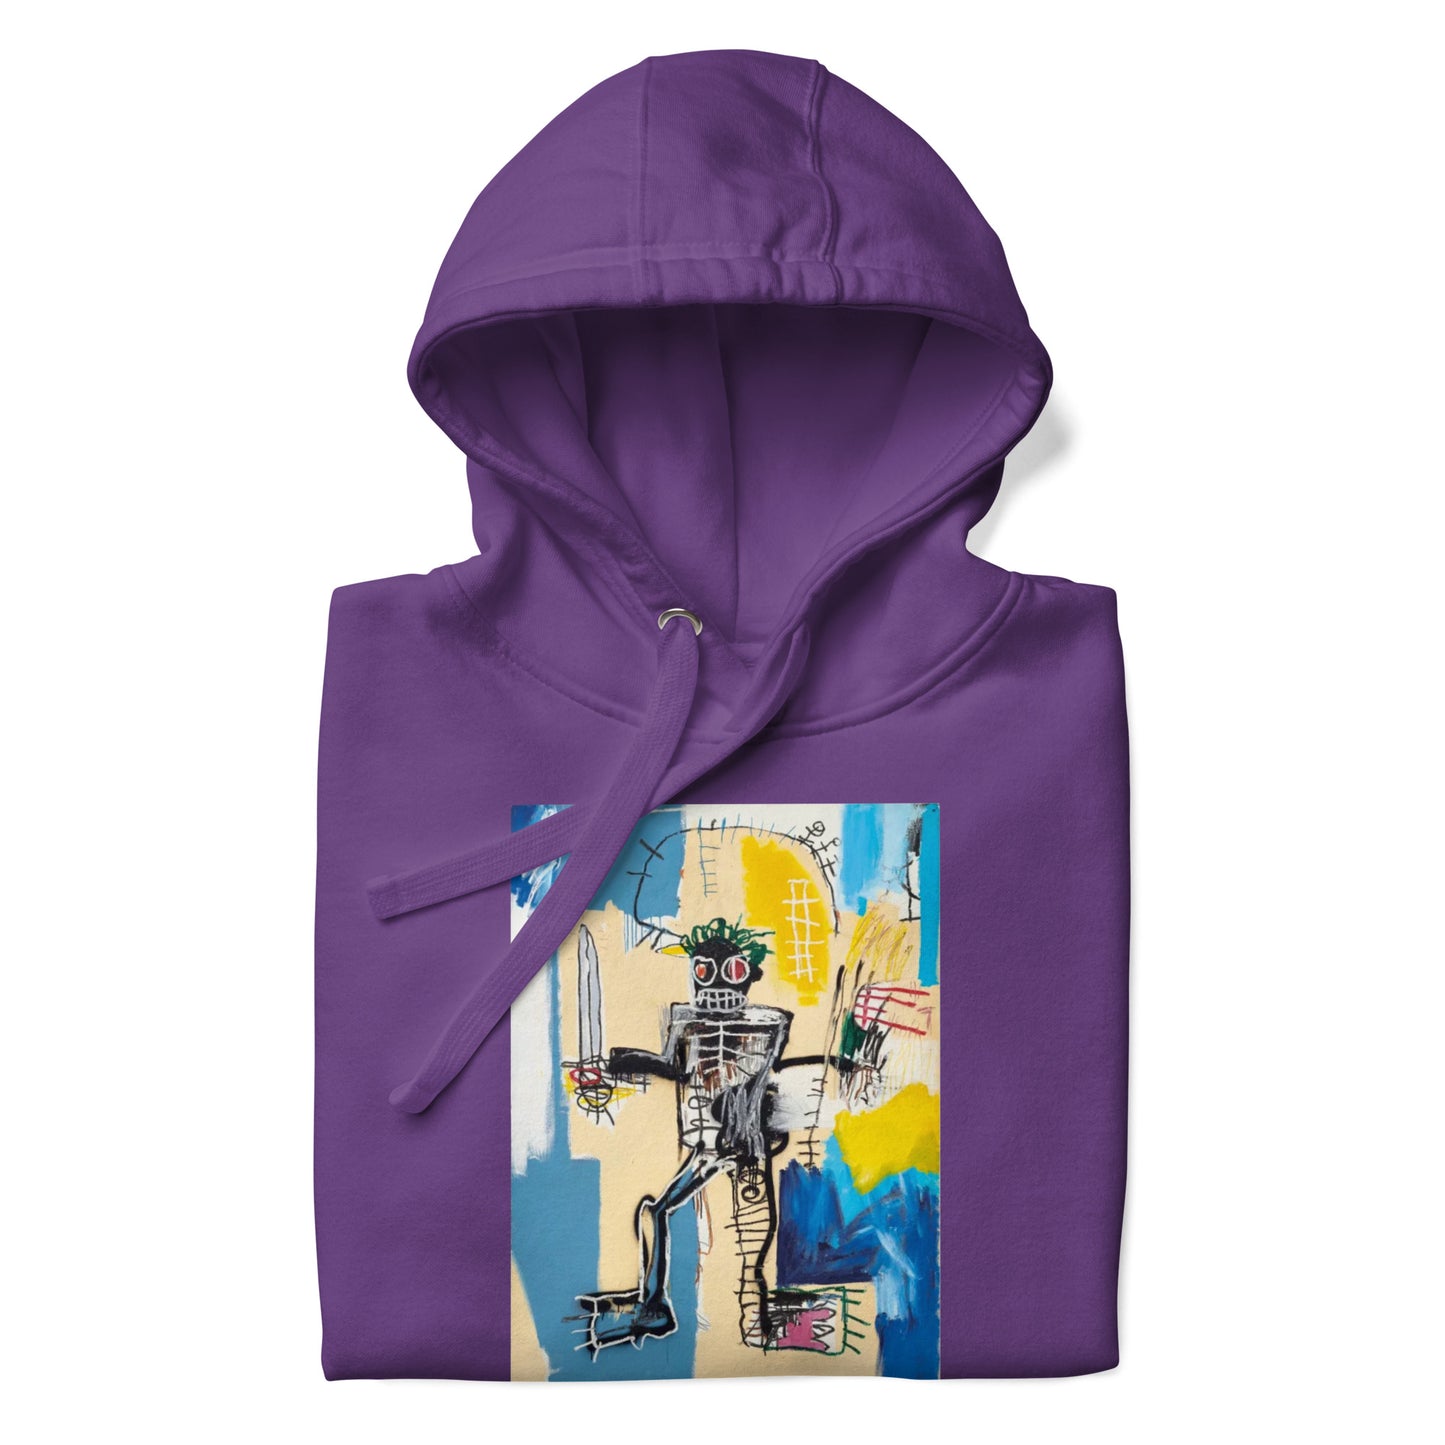 Jean-Michel Basquiat "Warrior" Artwork Printed Premium Streetwear Sweatshirt Hoodie Purple